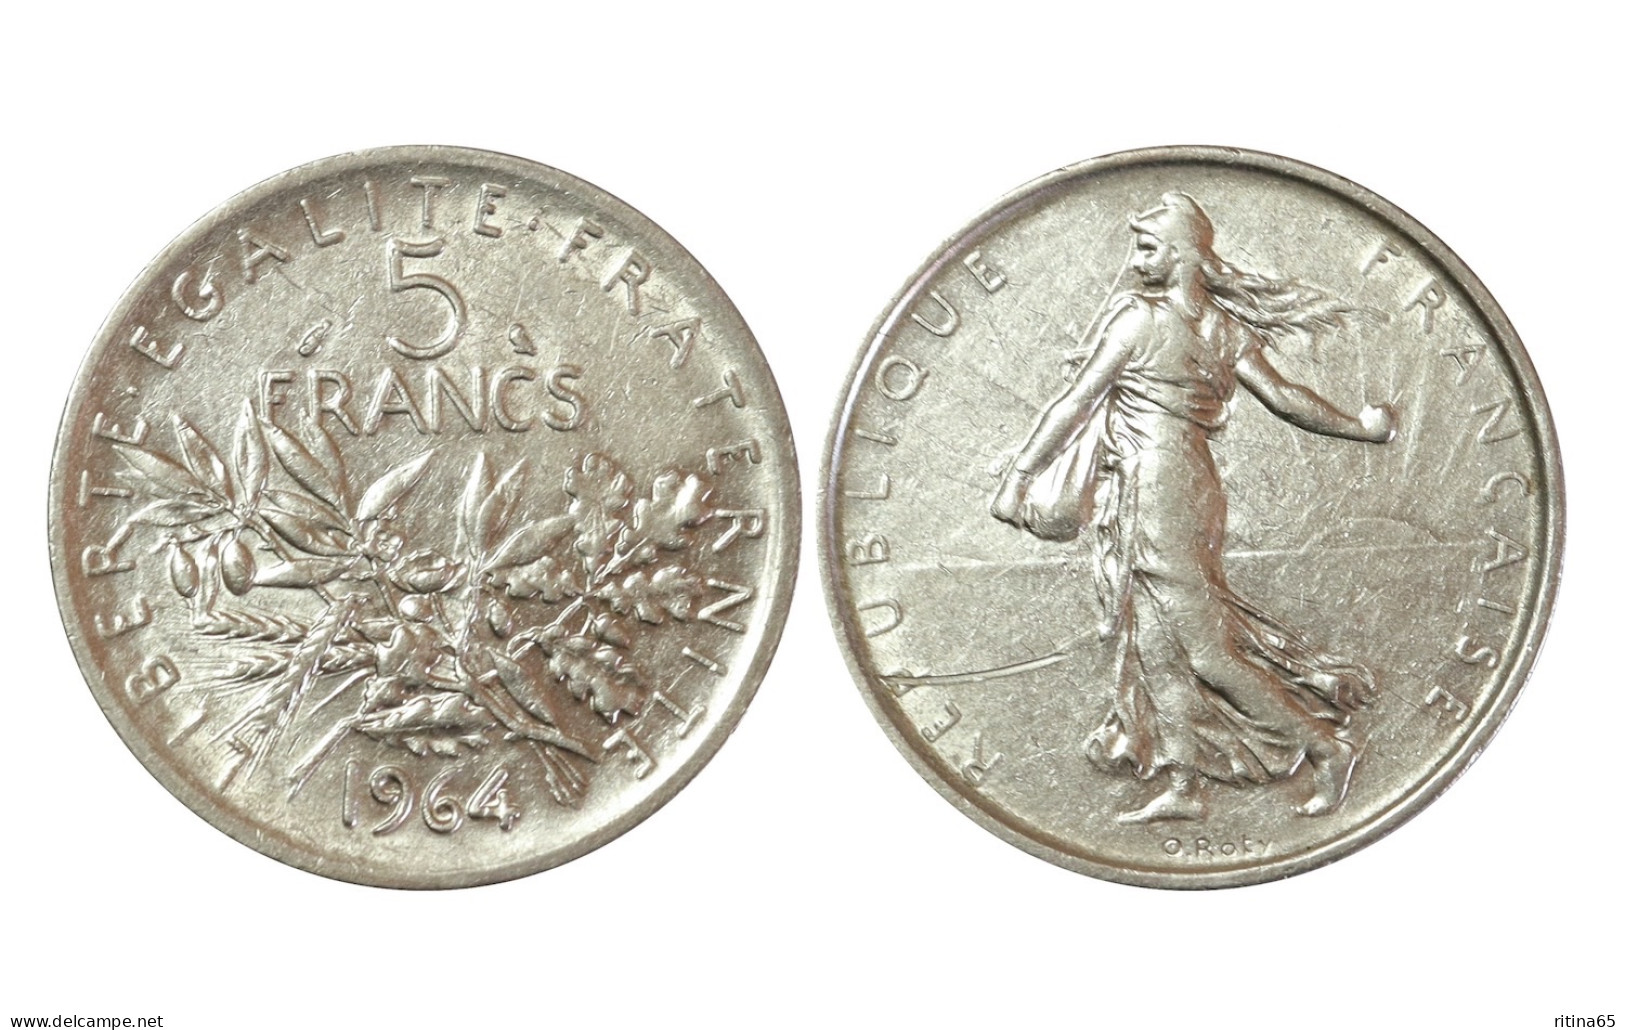 FRANCIA 5 FRANCS 1964 IN ARGENTO KM# 926 - 5 Francs